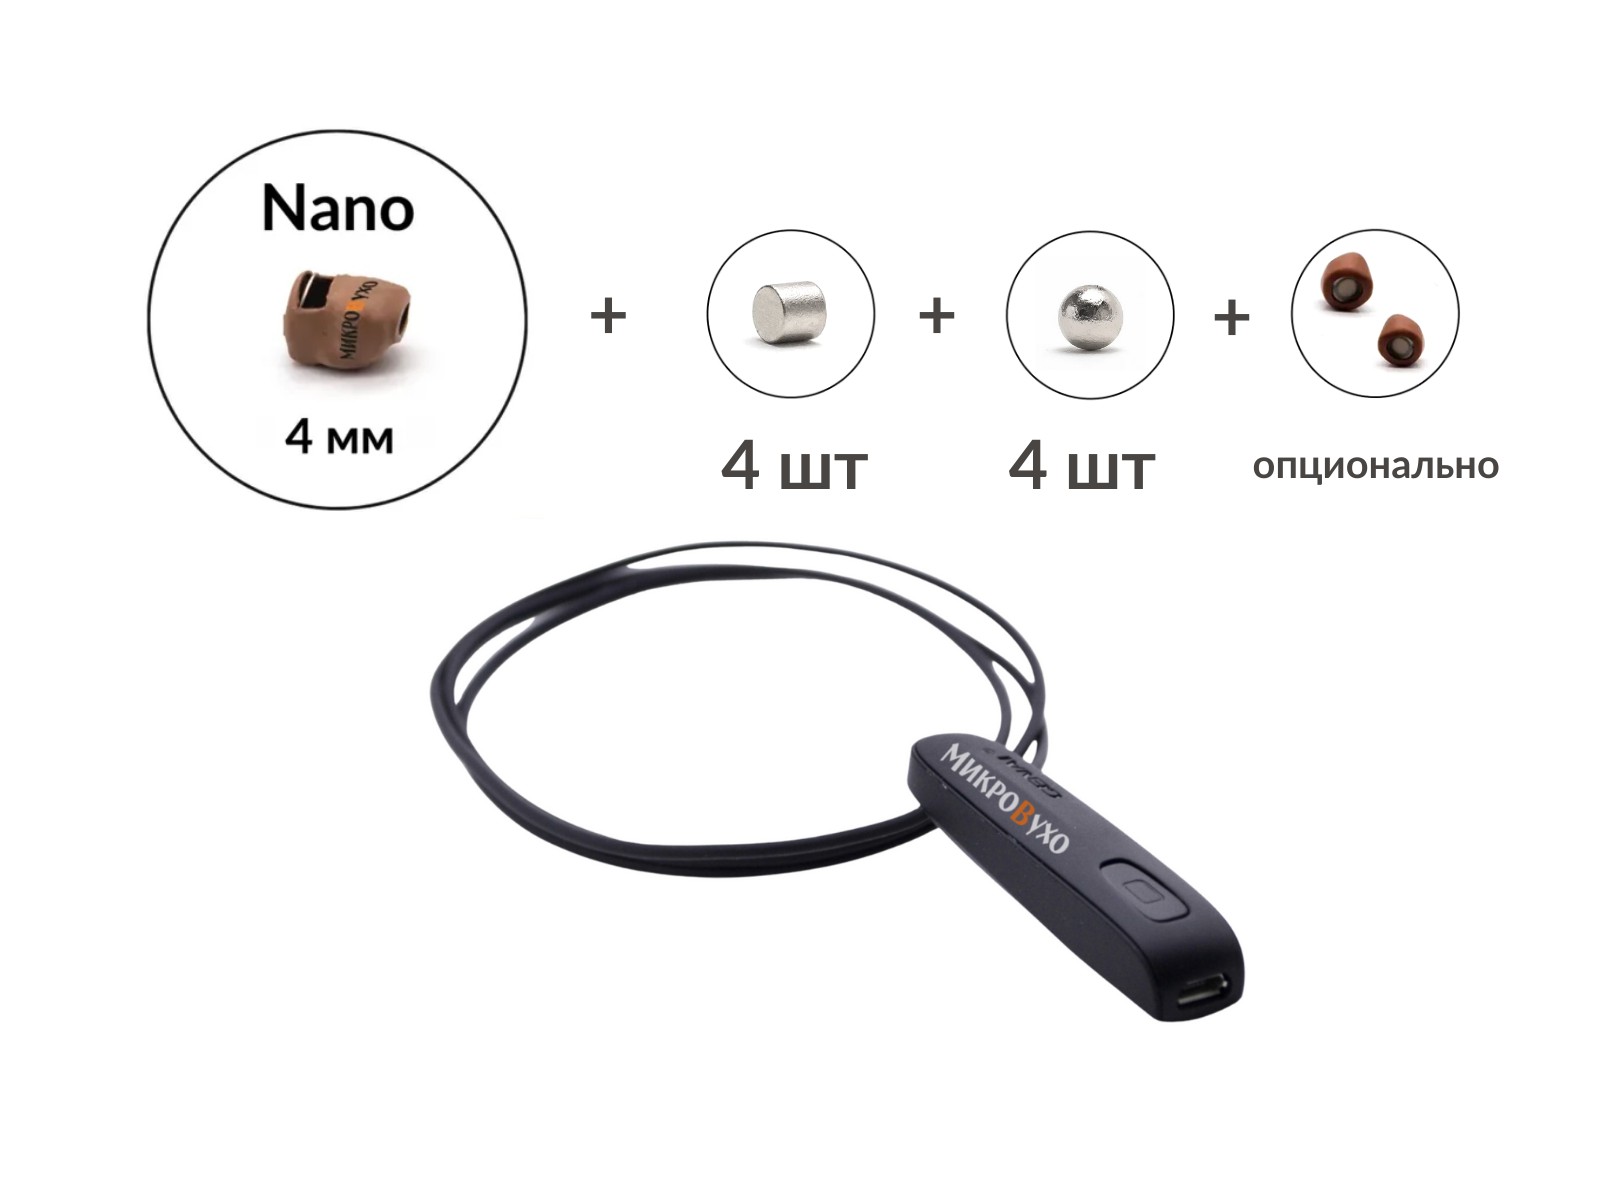 Универсальная гарнитура Bluetooth Basic с капсулой K5 4 мм и магнитами 2 мм